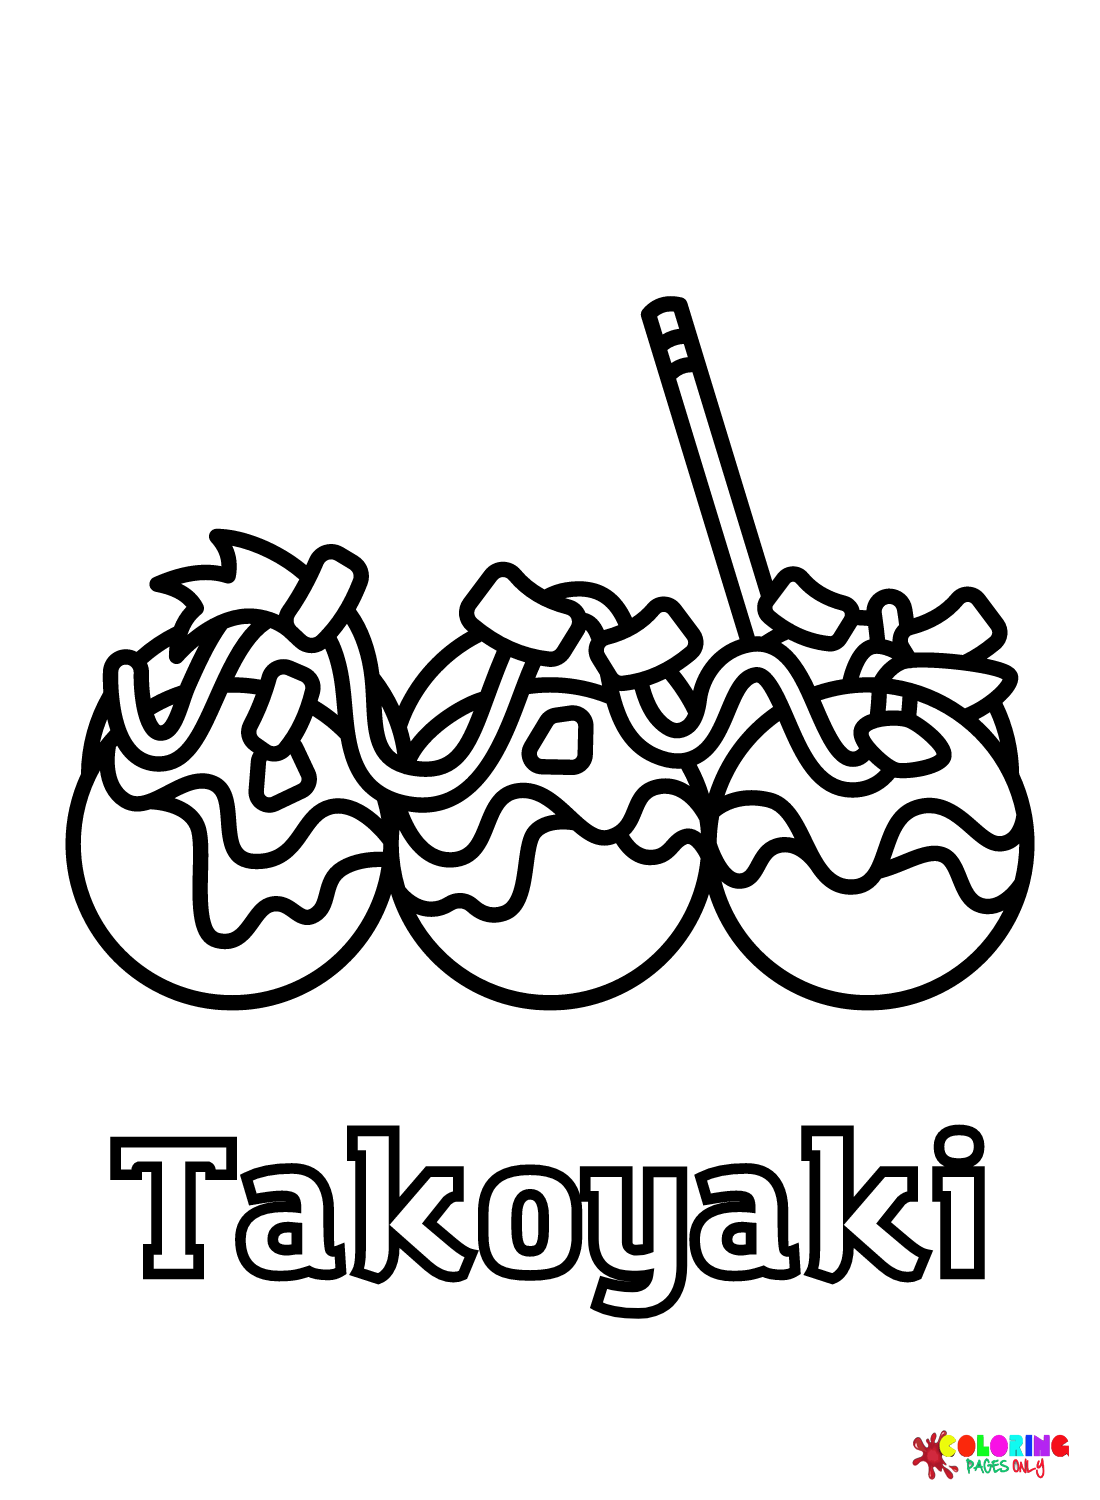 Kostenloses Takoyaki von Takoyaki